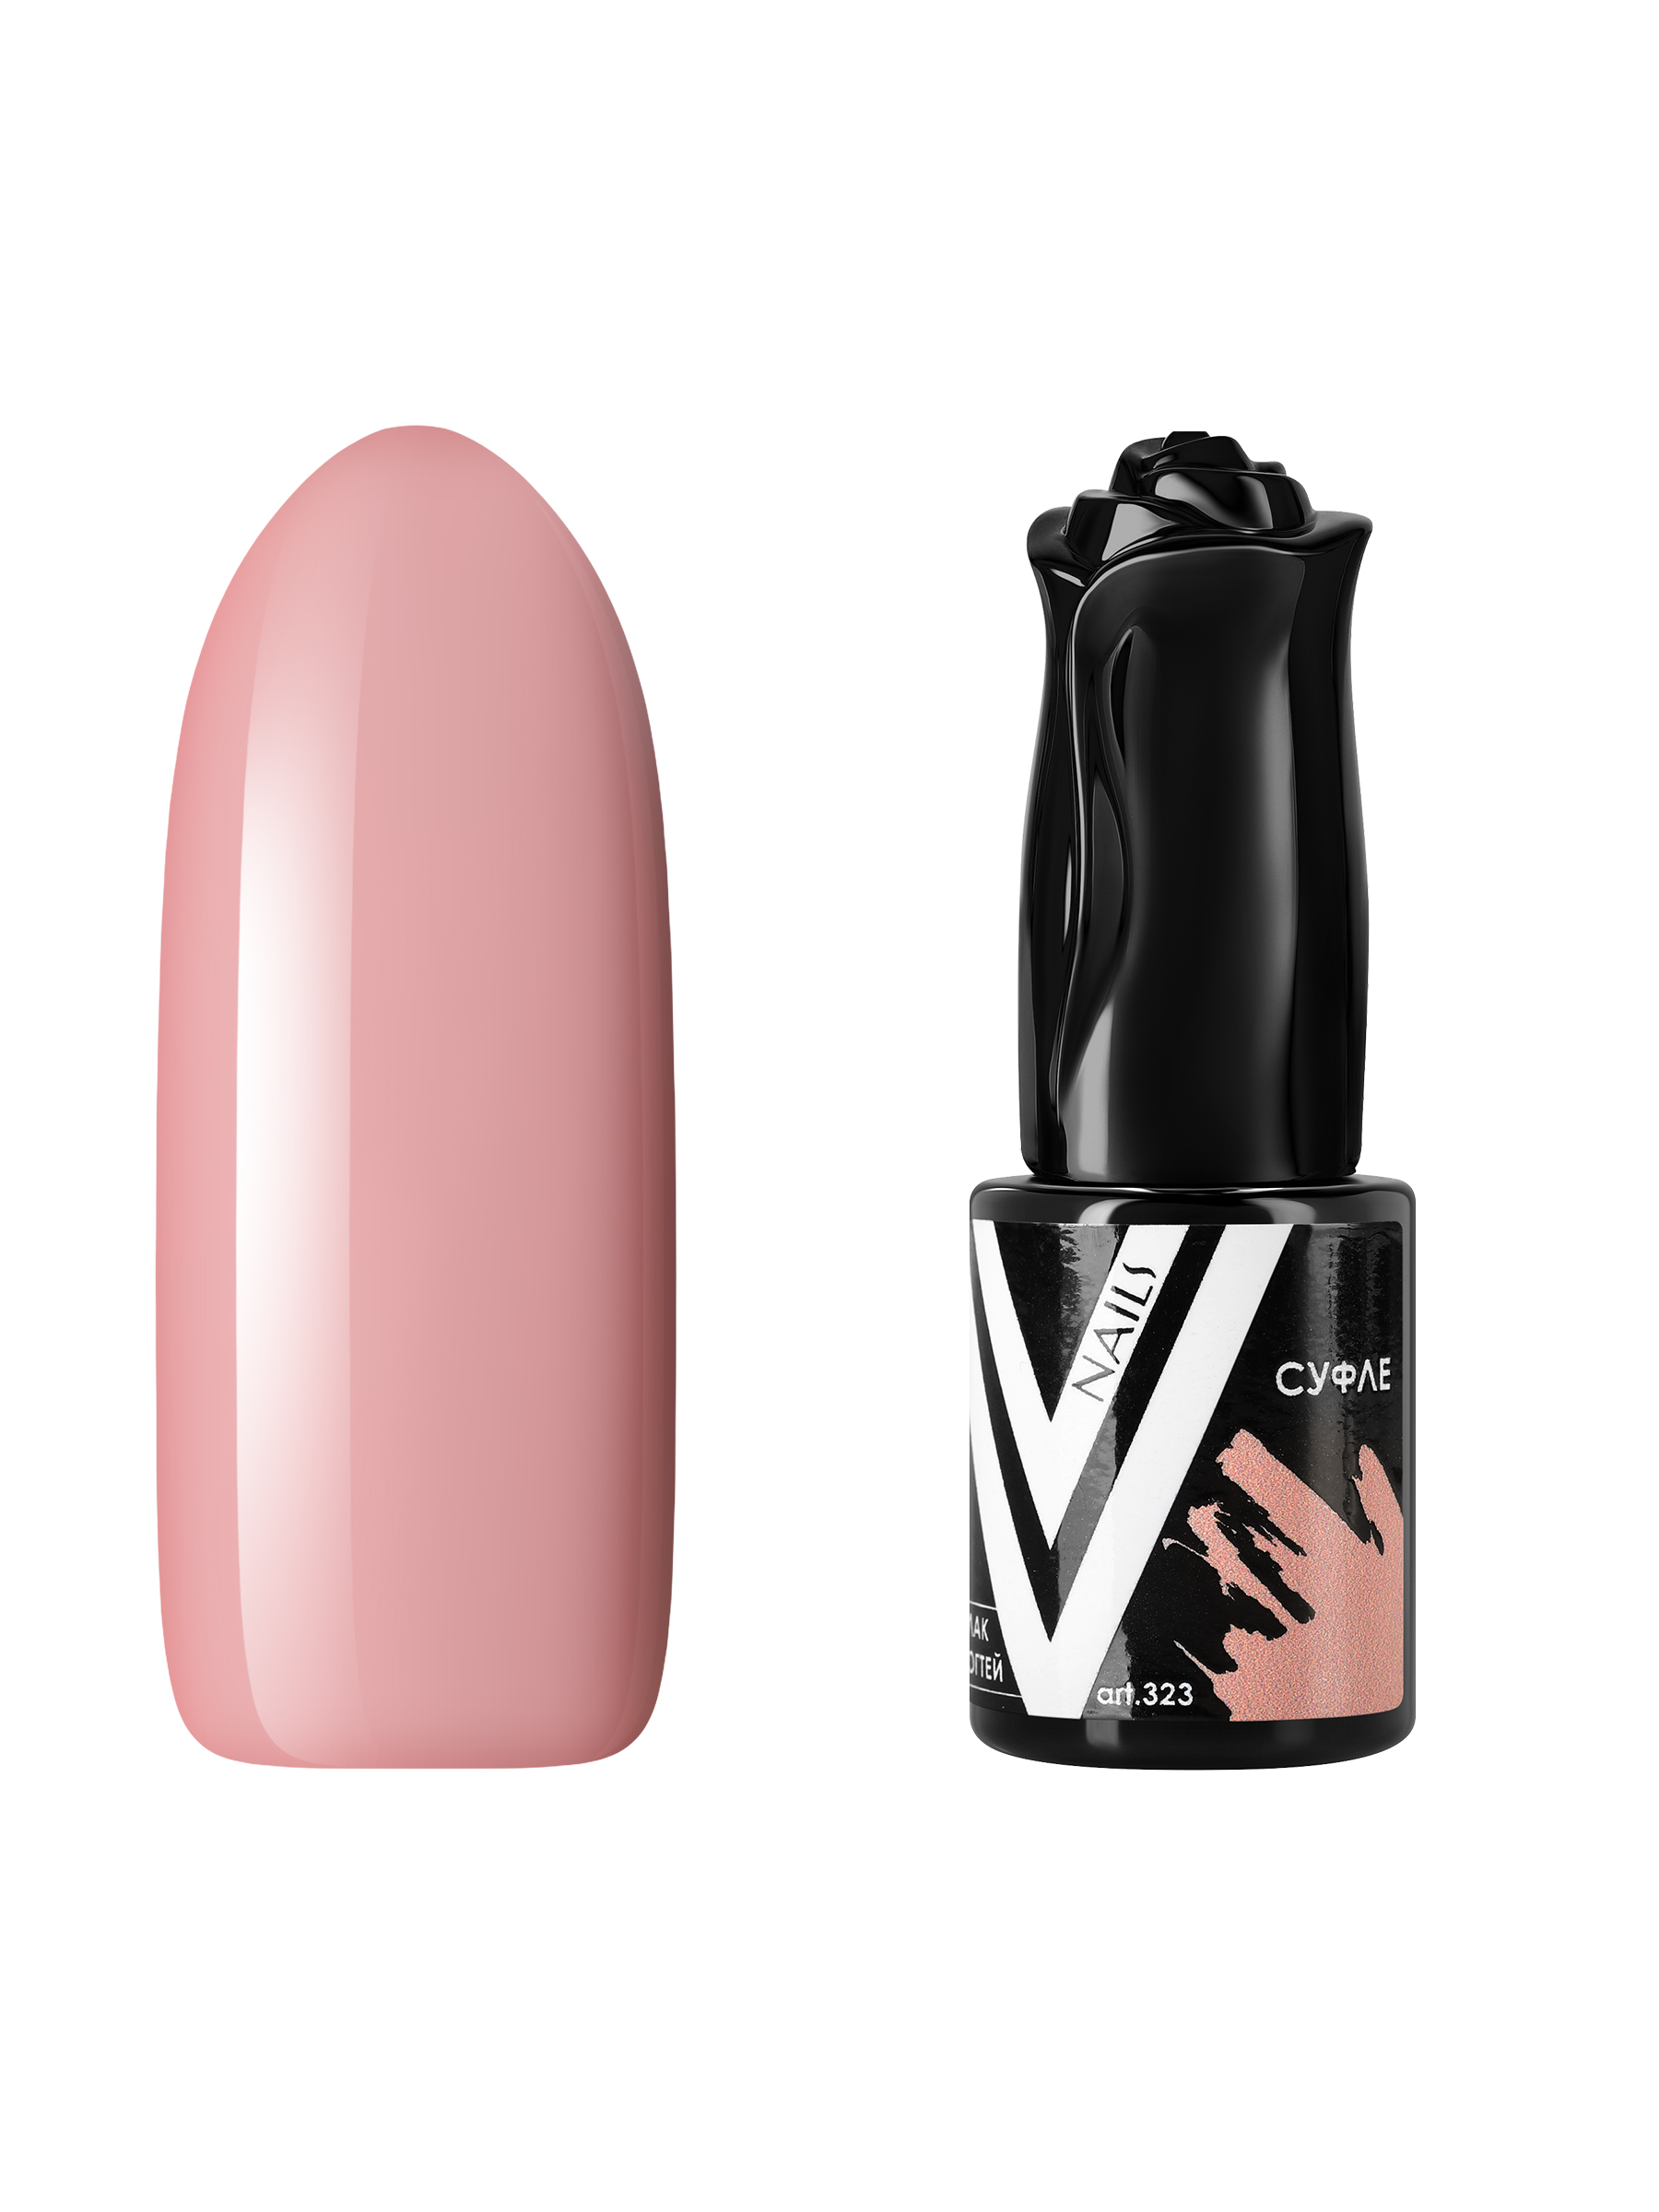 Гель-лак для ногтей Vogue Nails плотный, самовыравнивающийся, светлый, бежевый, 10 мл стул дэгни мидеа 01 бежевый стандарт металл глянец